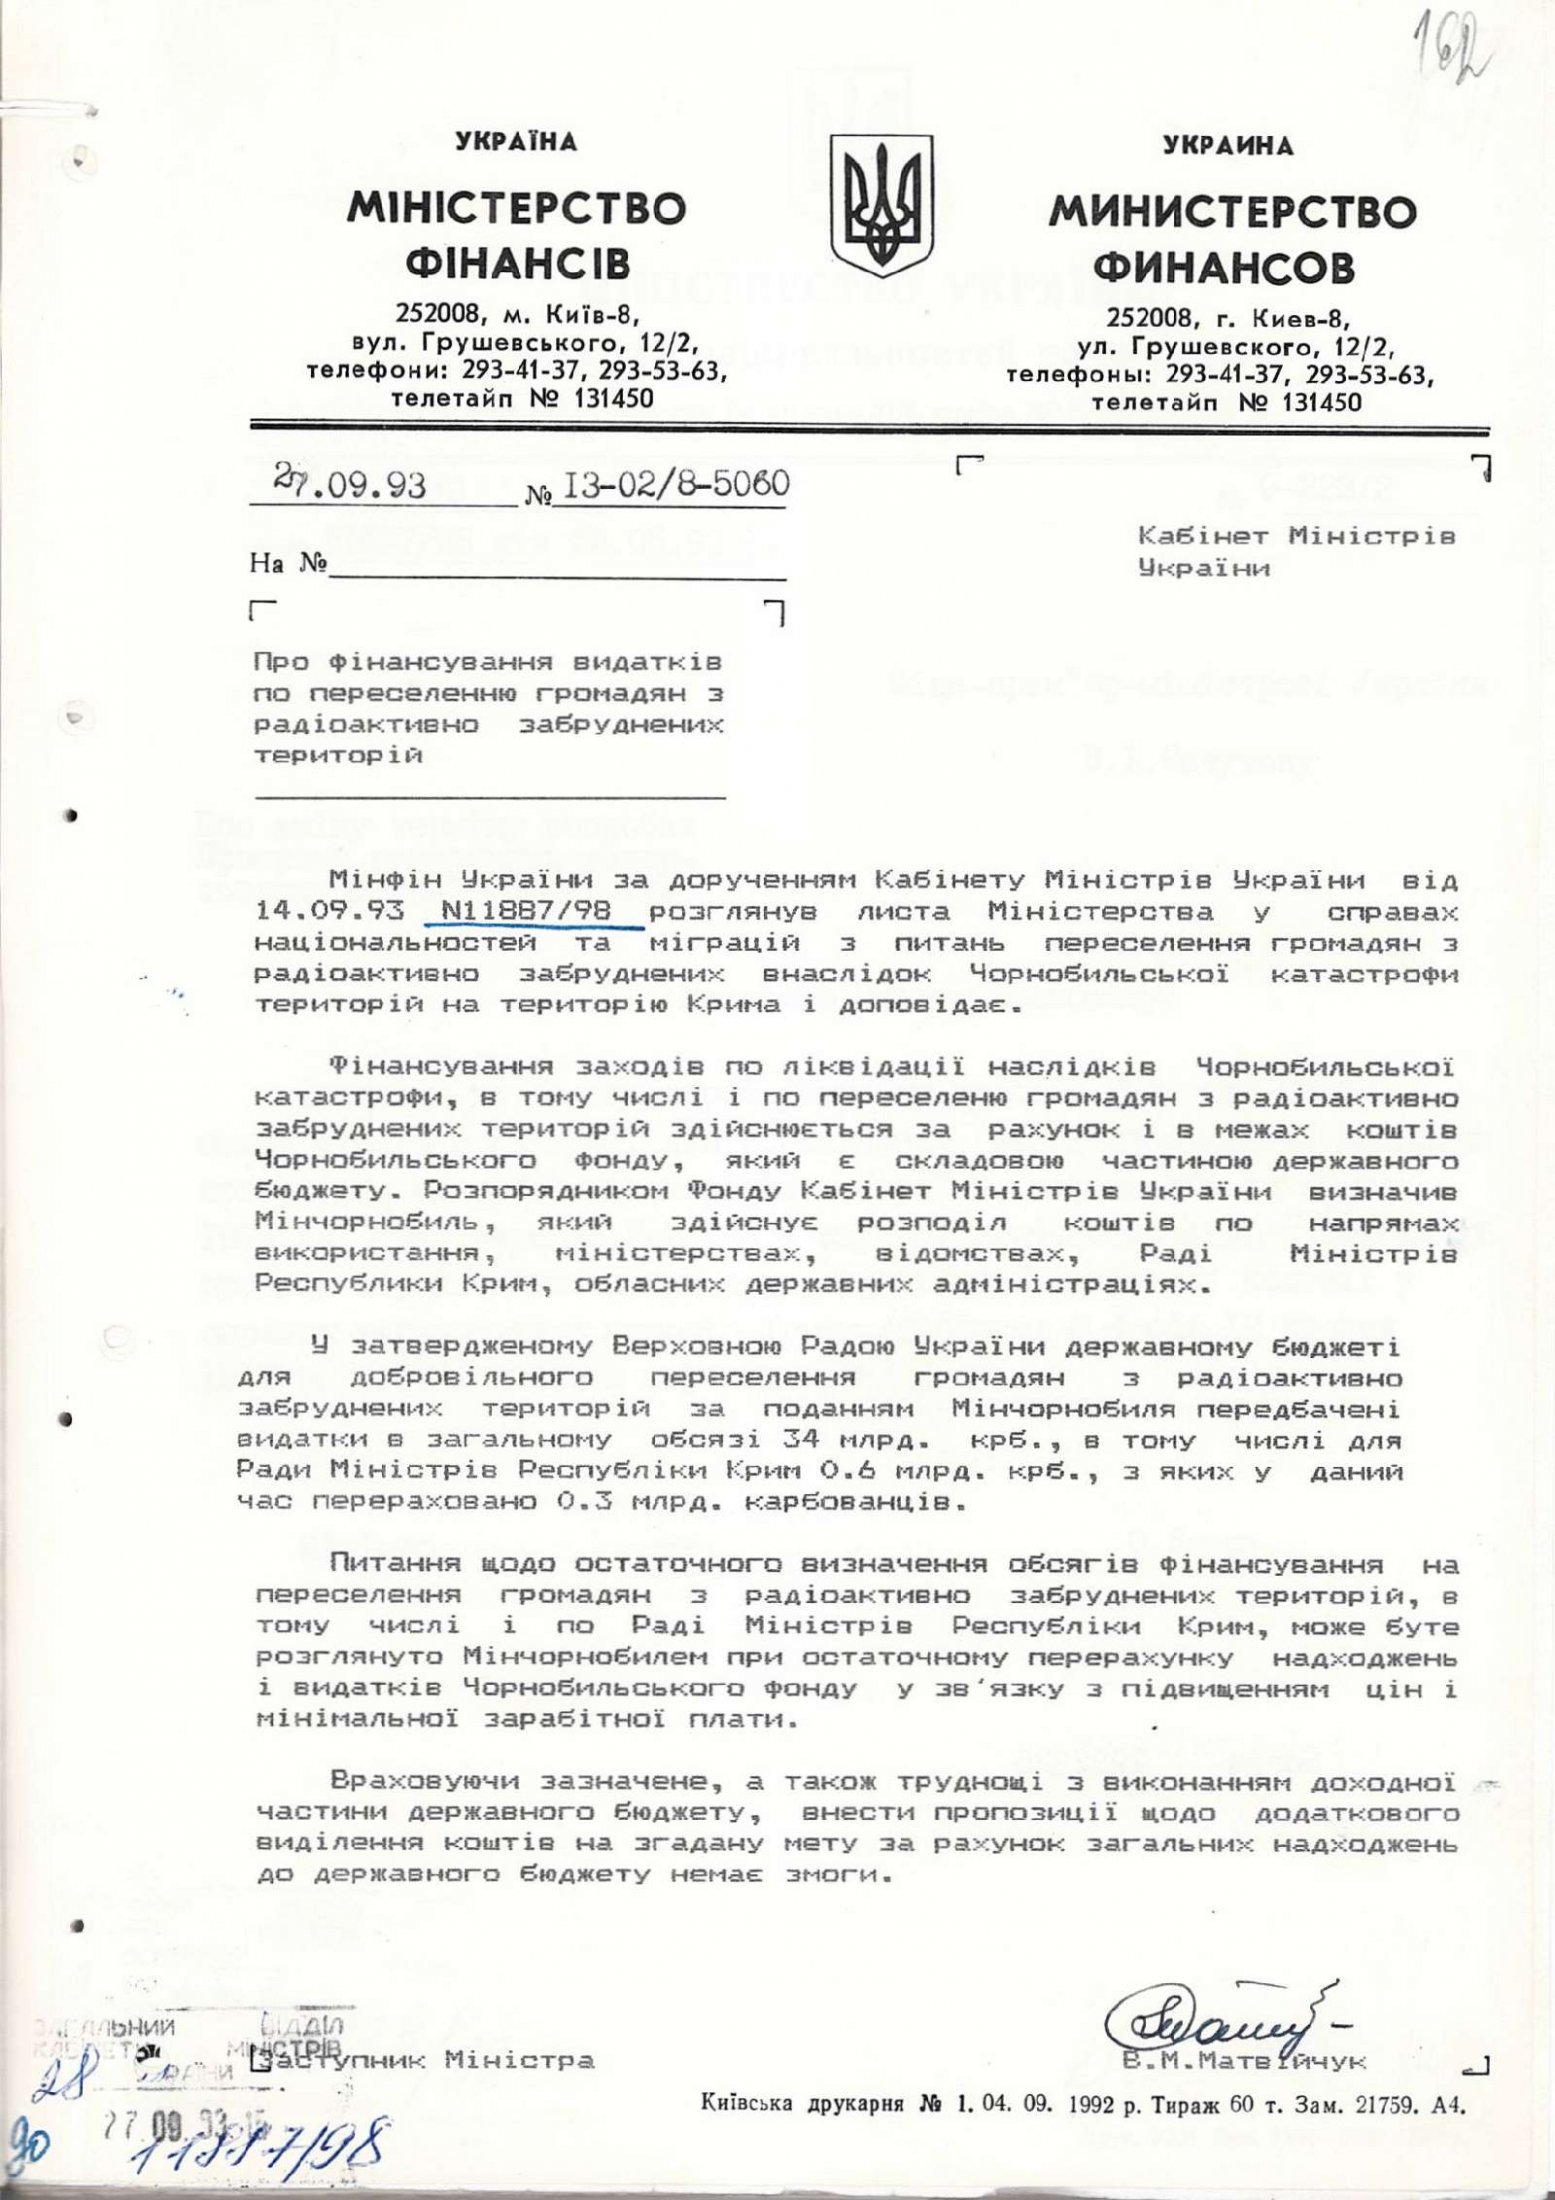 Протокол № 4 засідання Республіканської комісії у справах депортованих народів Криму. 12 квітня 1993 р.